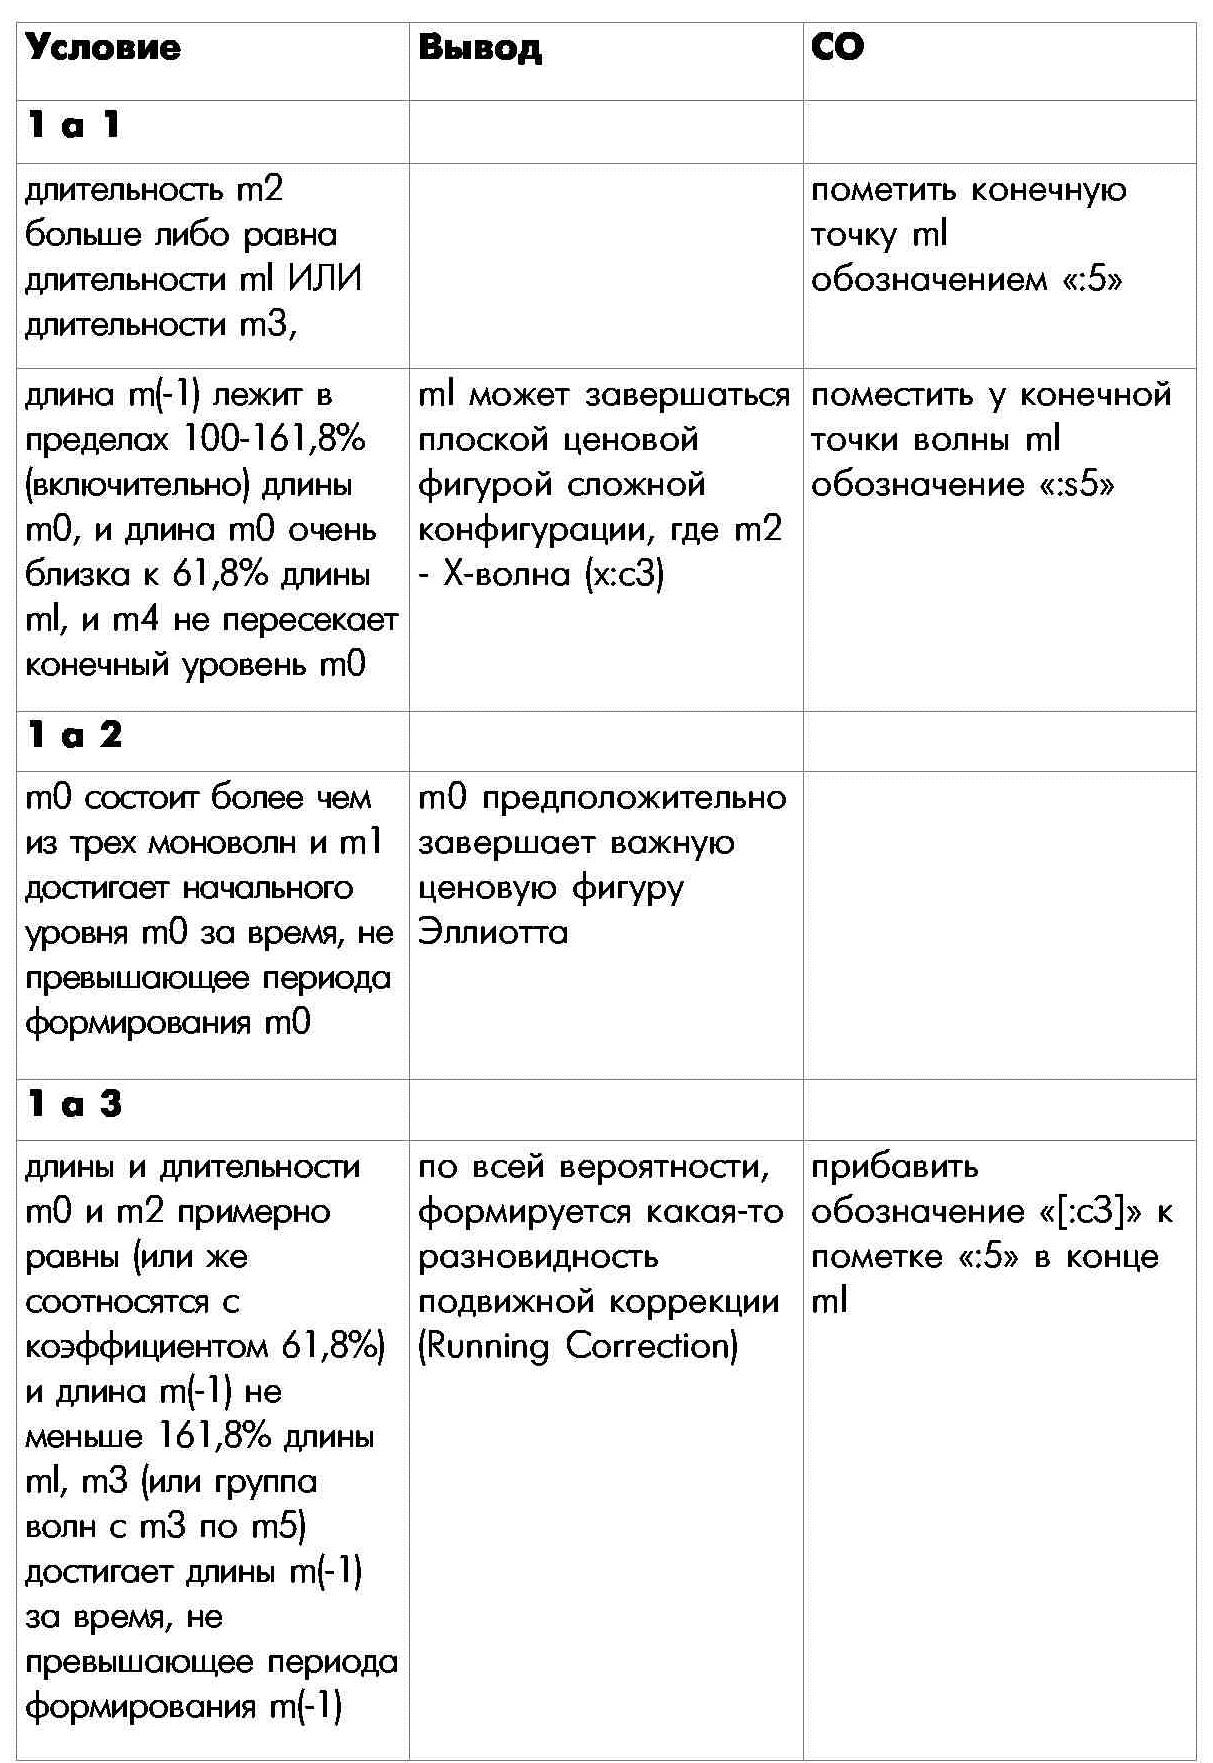 Правило 1 определения внутренней структуры моноволны первая часть таблицы